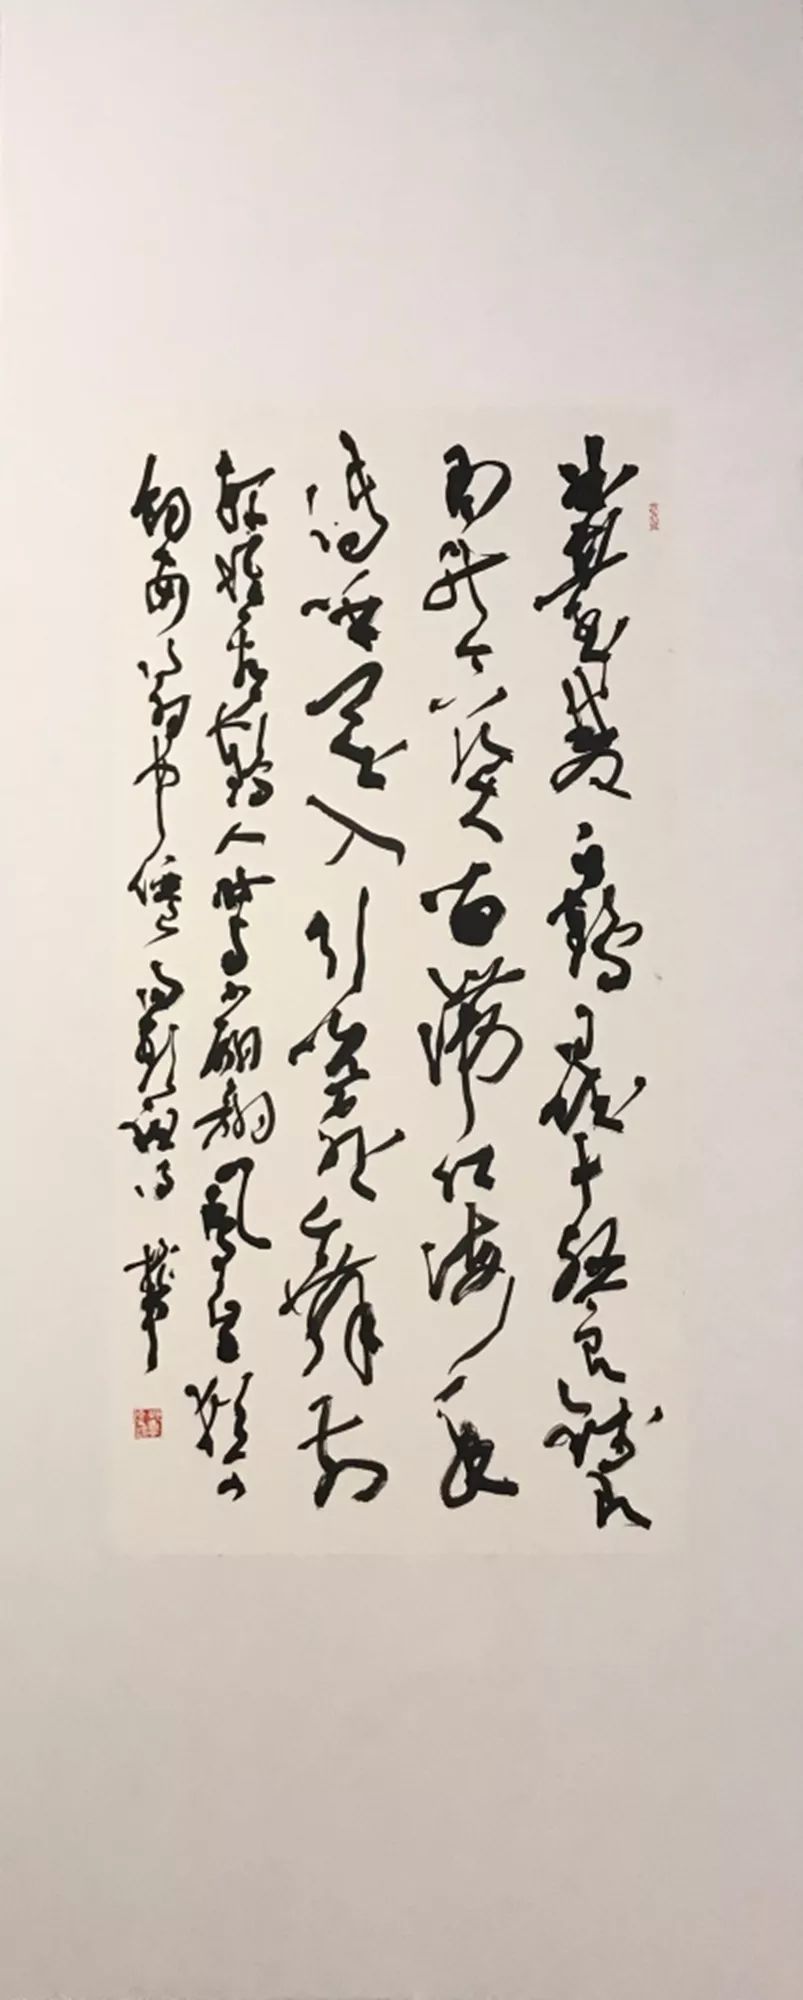 邱振中,草书·汤显祖诗,138x69cm,纸本,2019